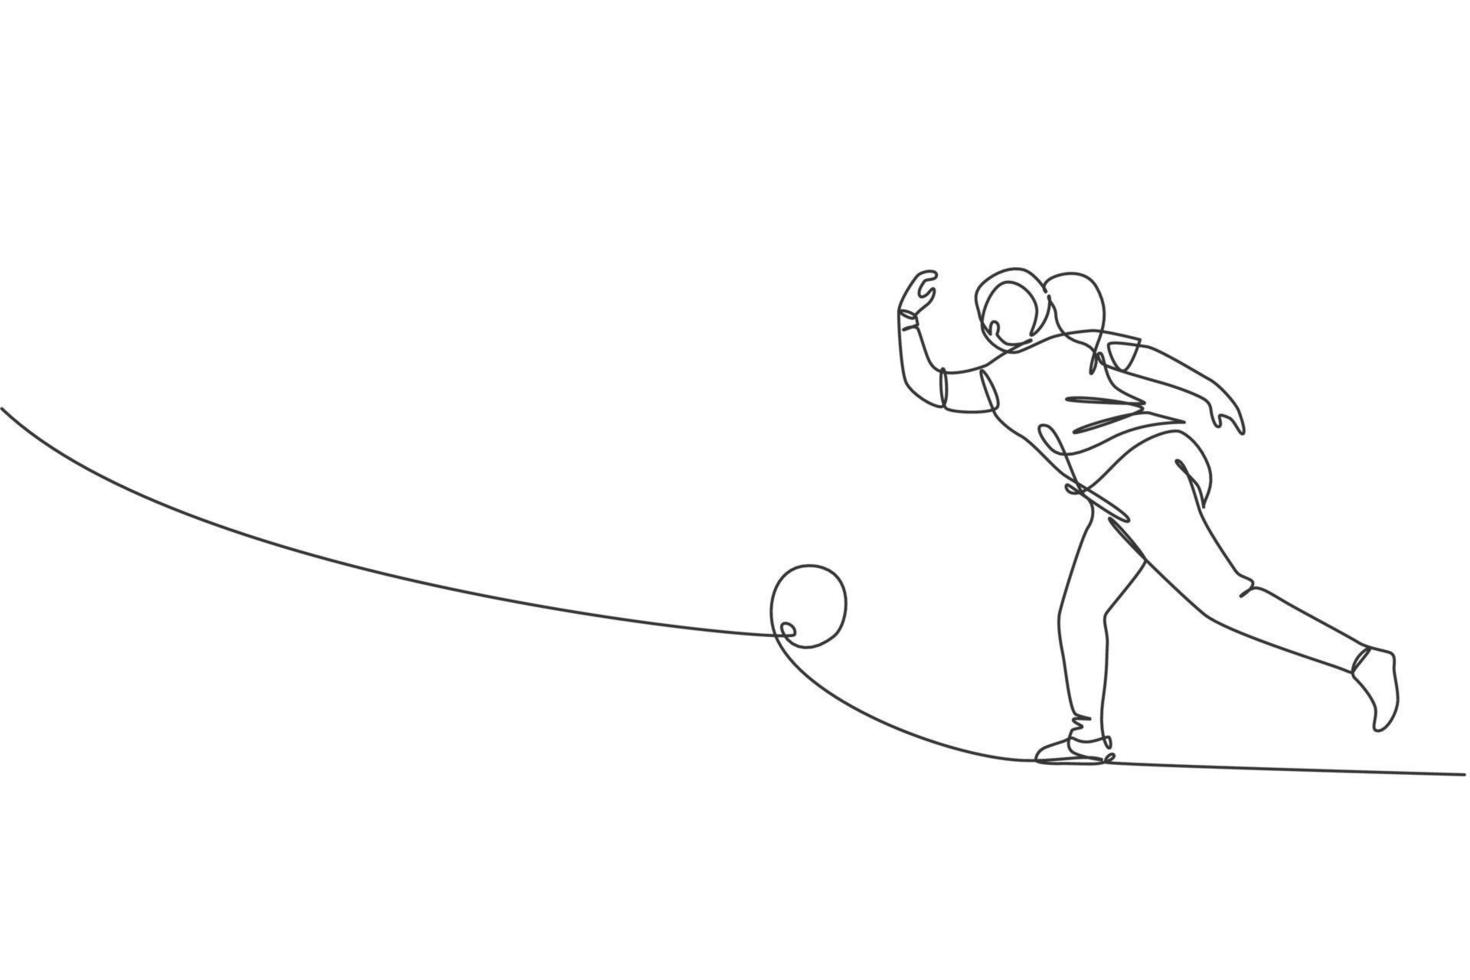 eine einzige Strichzeichnung junge talentierte Bowlingspielerin wirft Ball, um Bowlingpins zu treffen, Vektorgrafik-Illustration. gesunder lebensstil und sportkonzept. modernes Design mit durchgehender Linie vektor